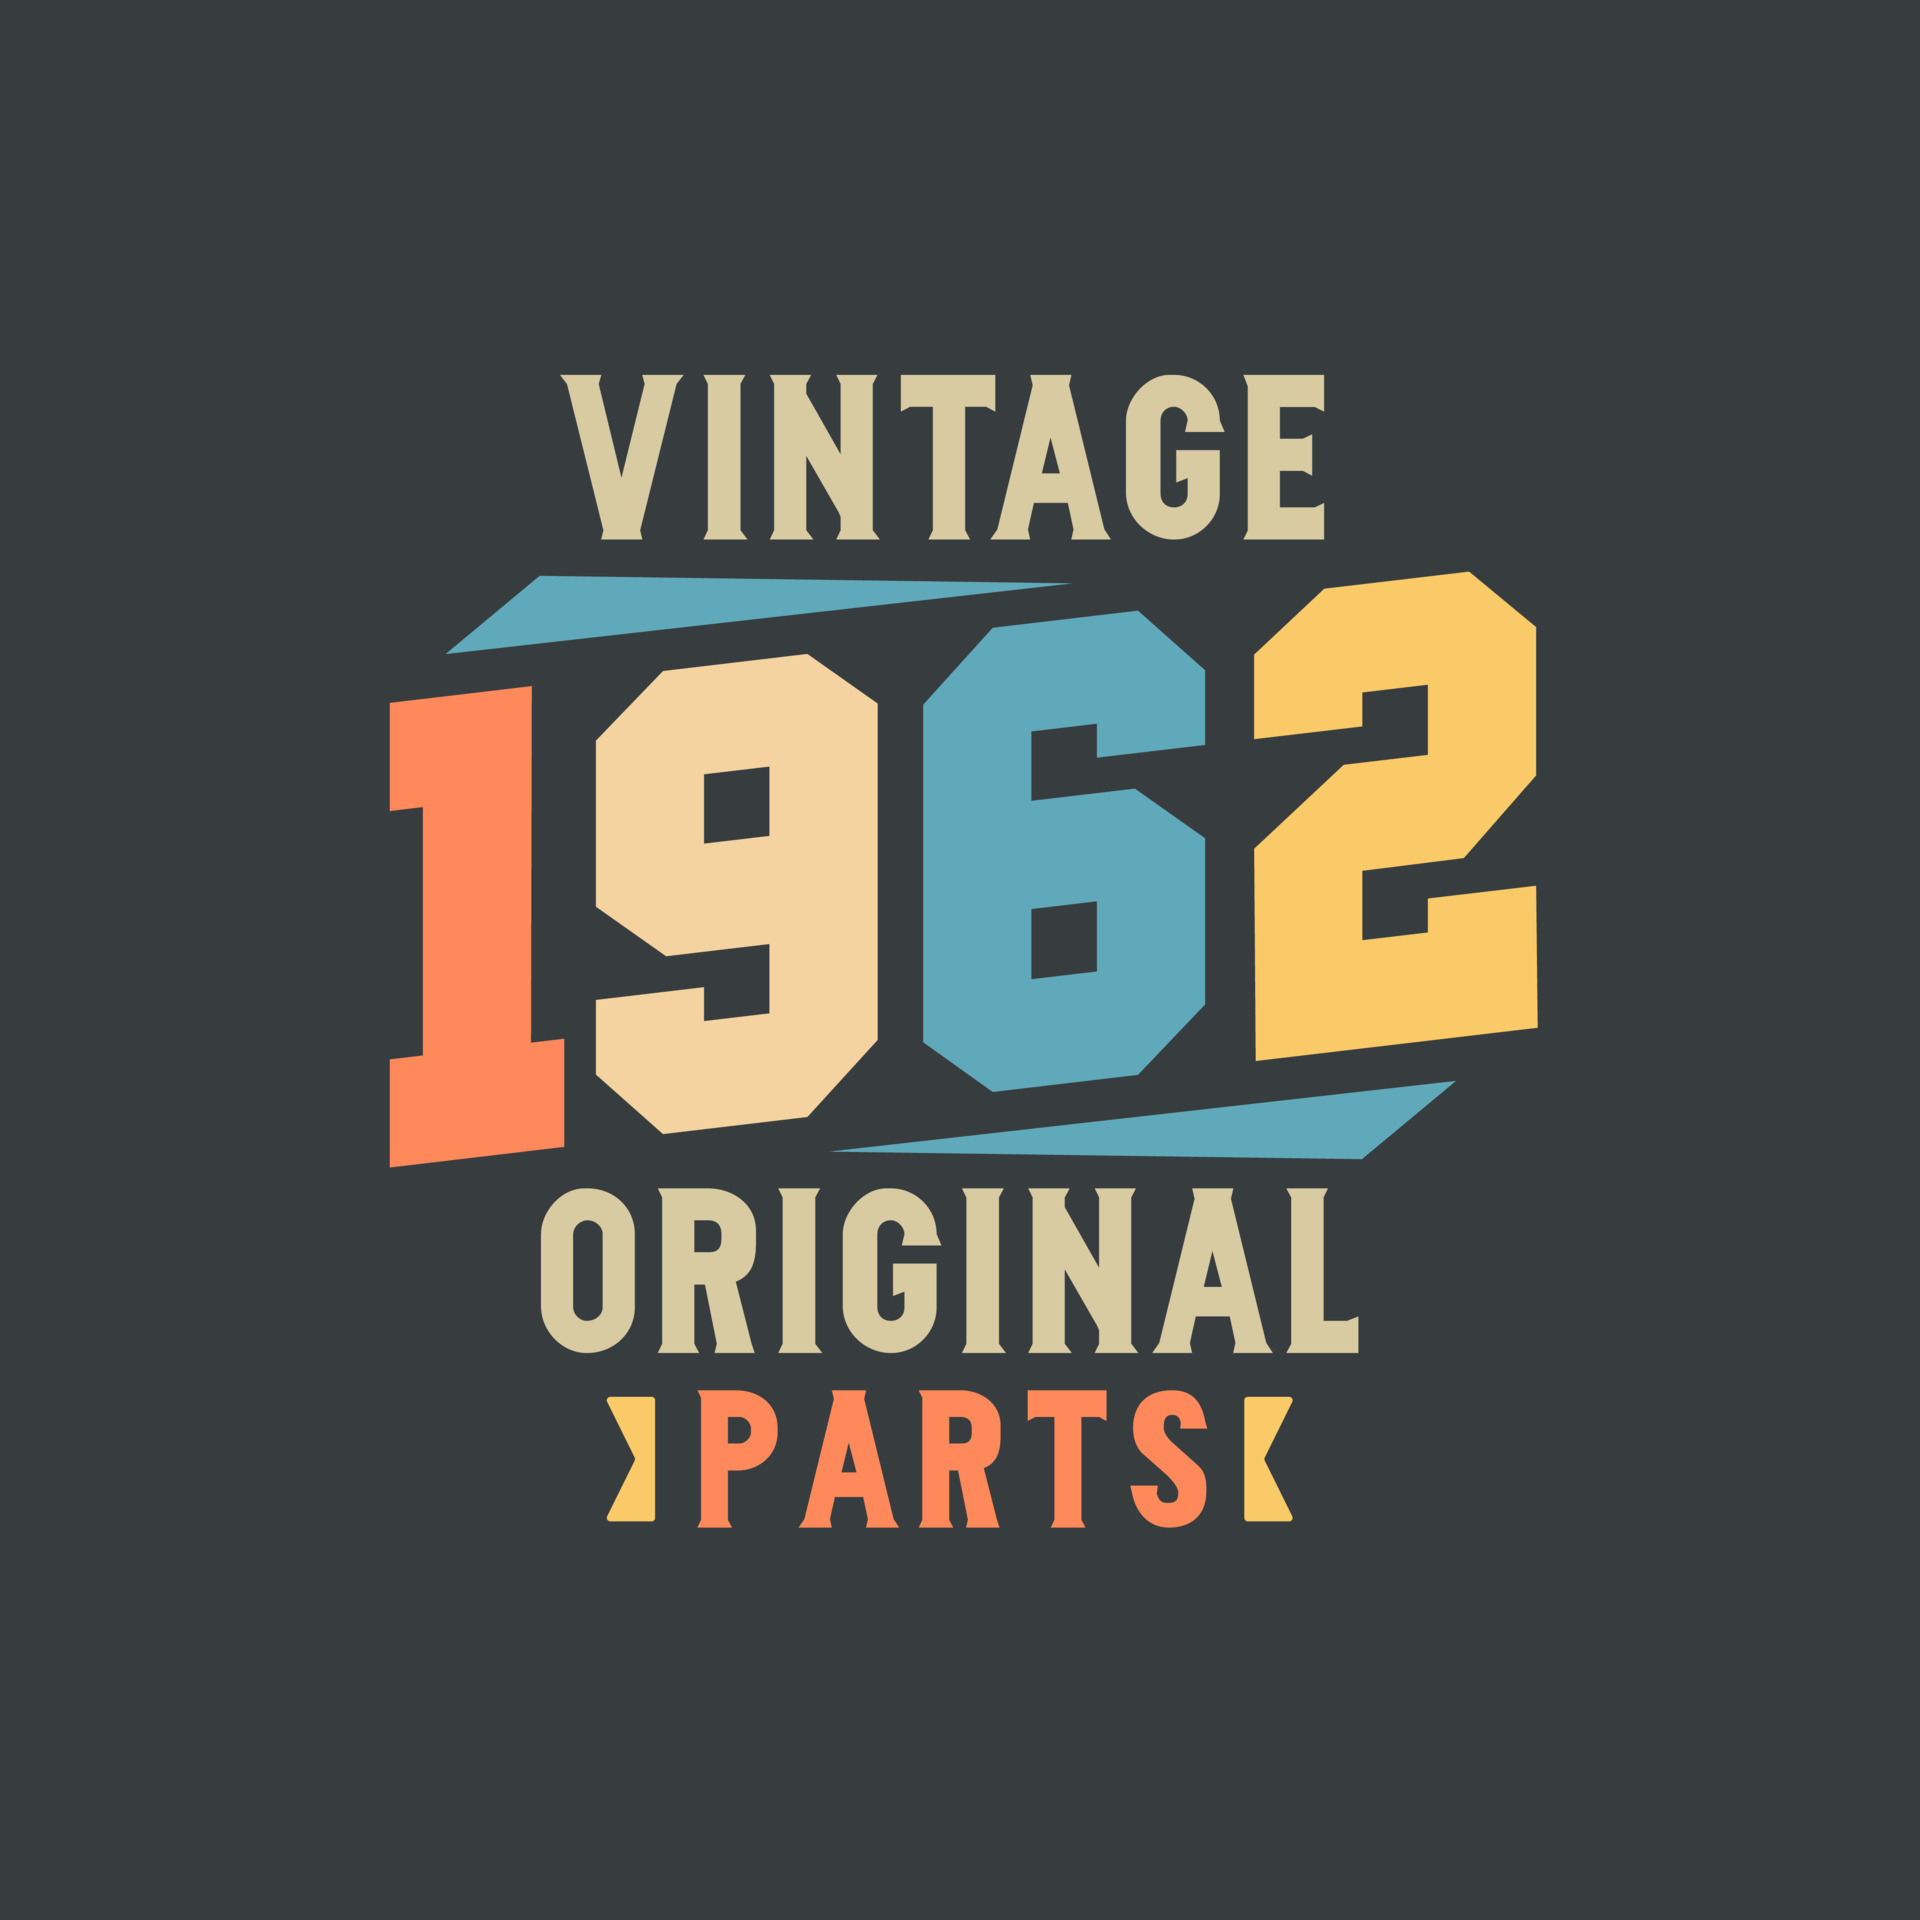 Vintage 1962 Original Parts. 1962 Vintage Retro Birthday 9722449 Vector ...